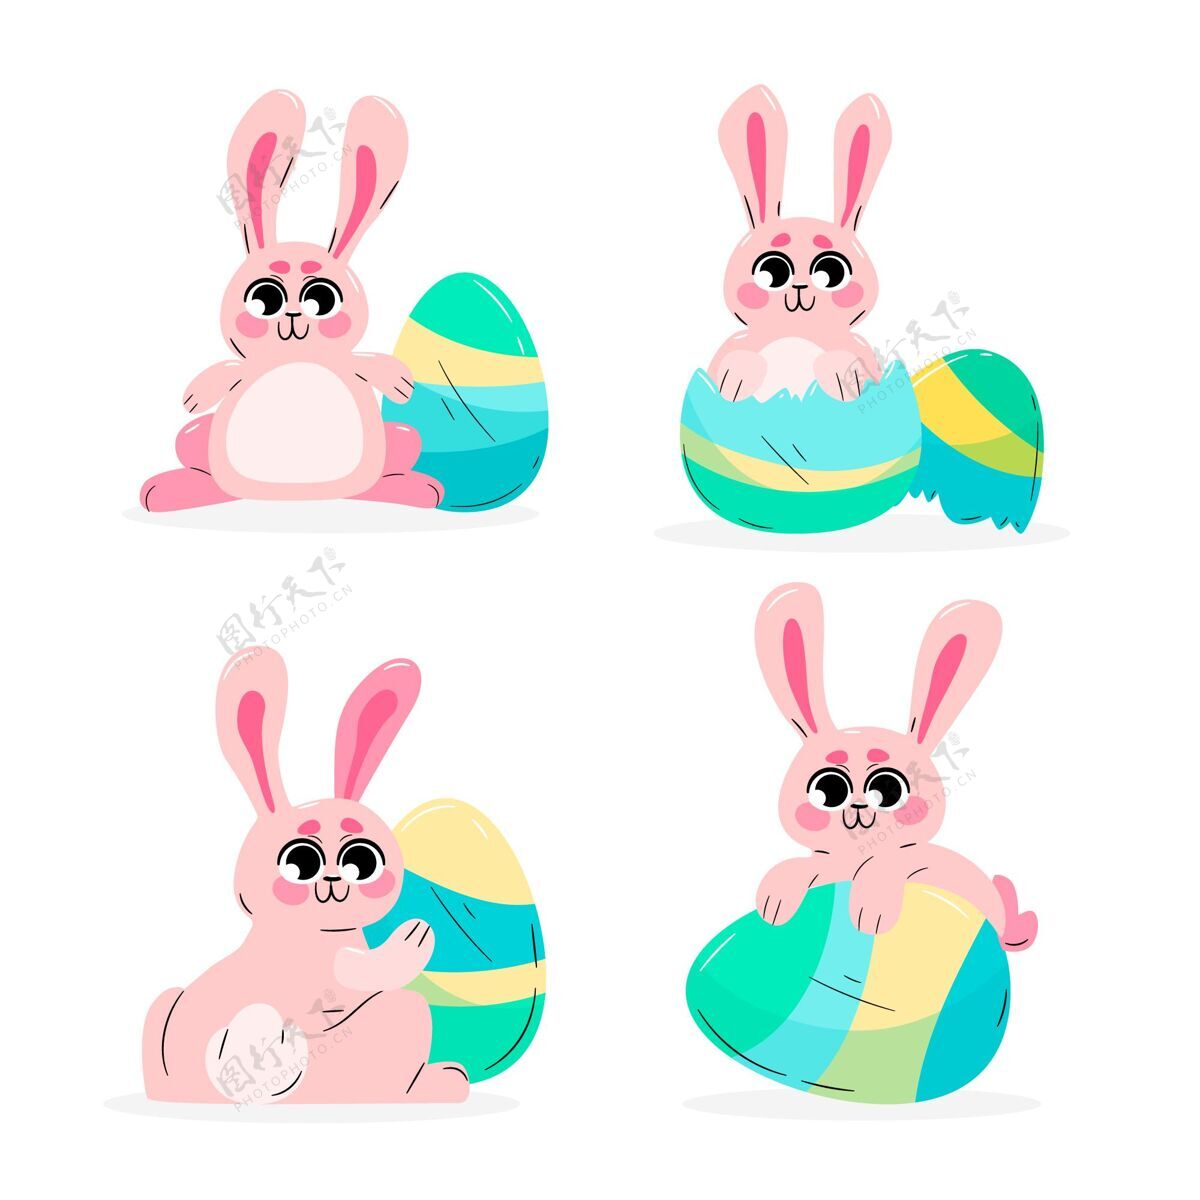 节日手绘复活节兔子系列纪念可爱帕斯卡